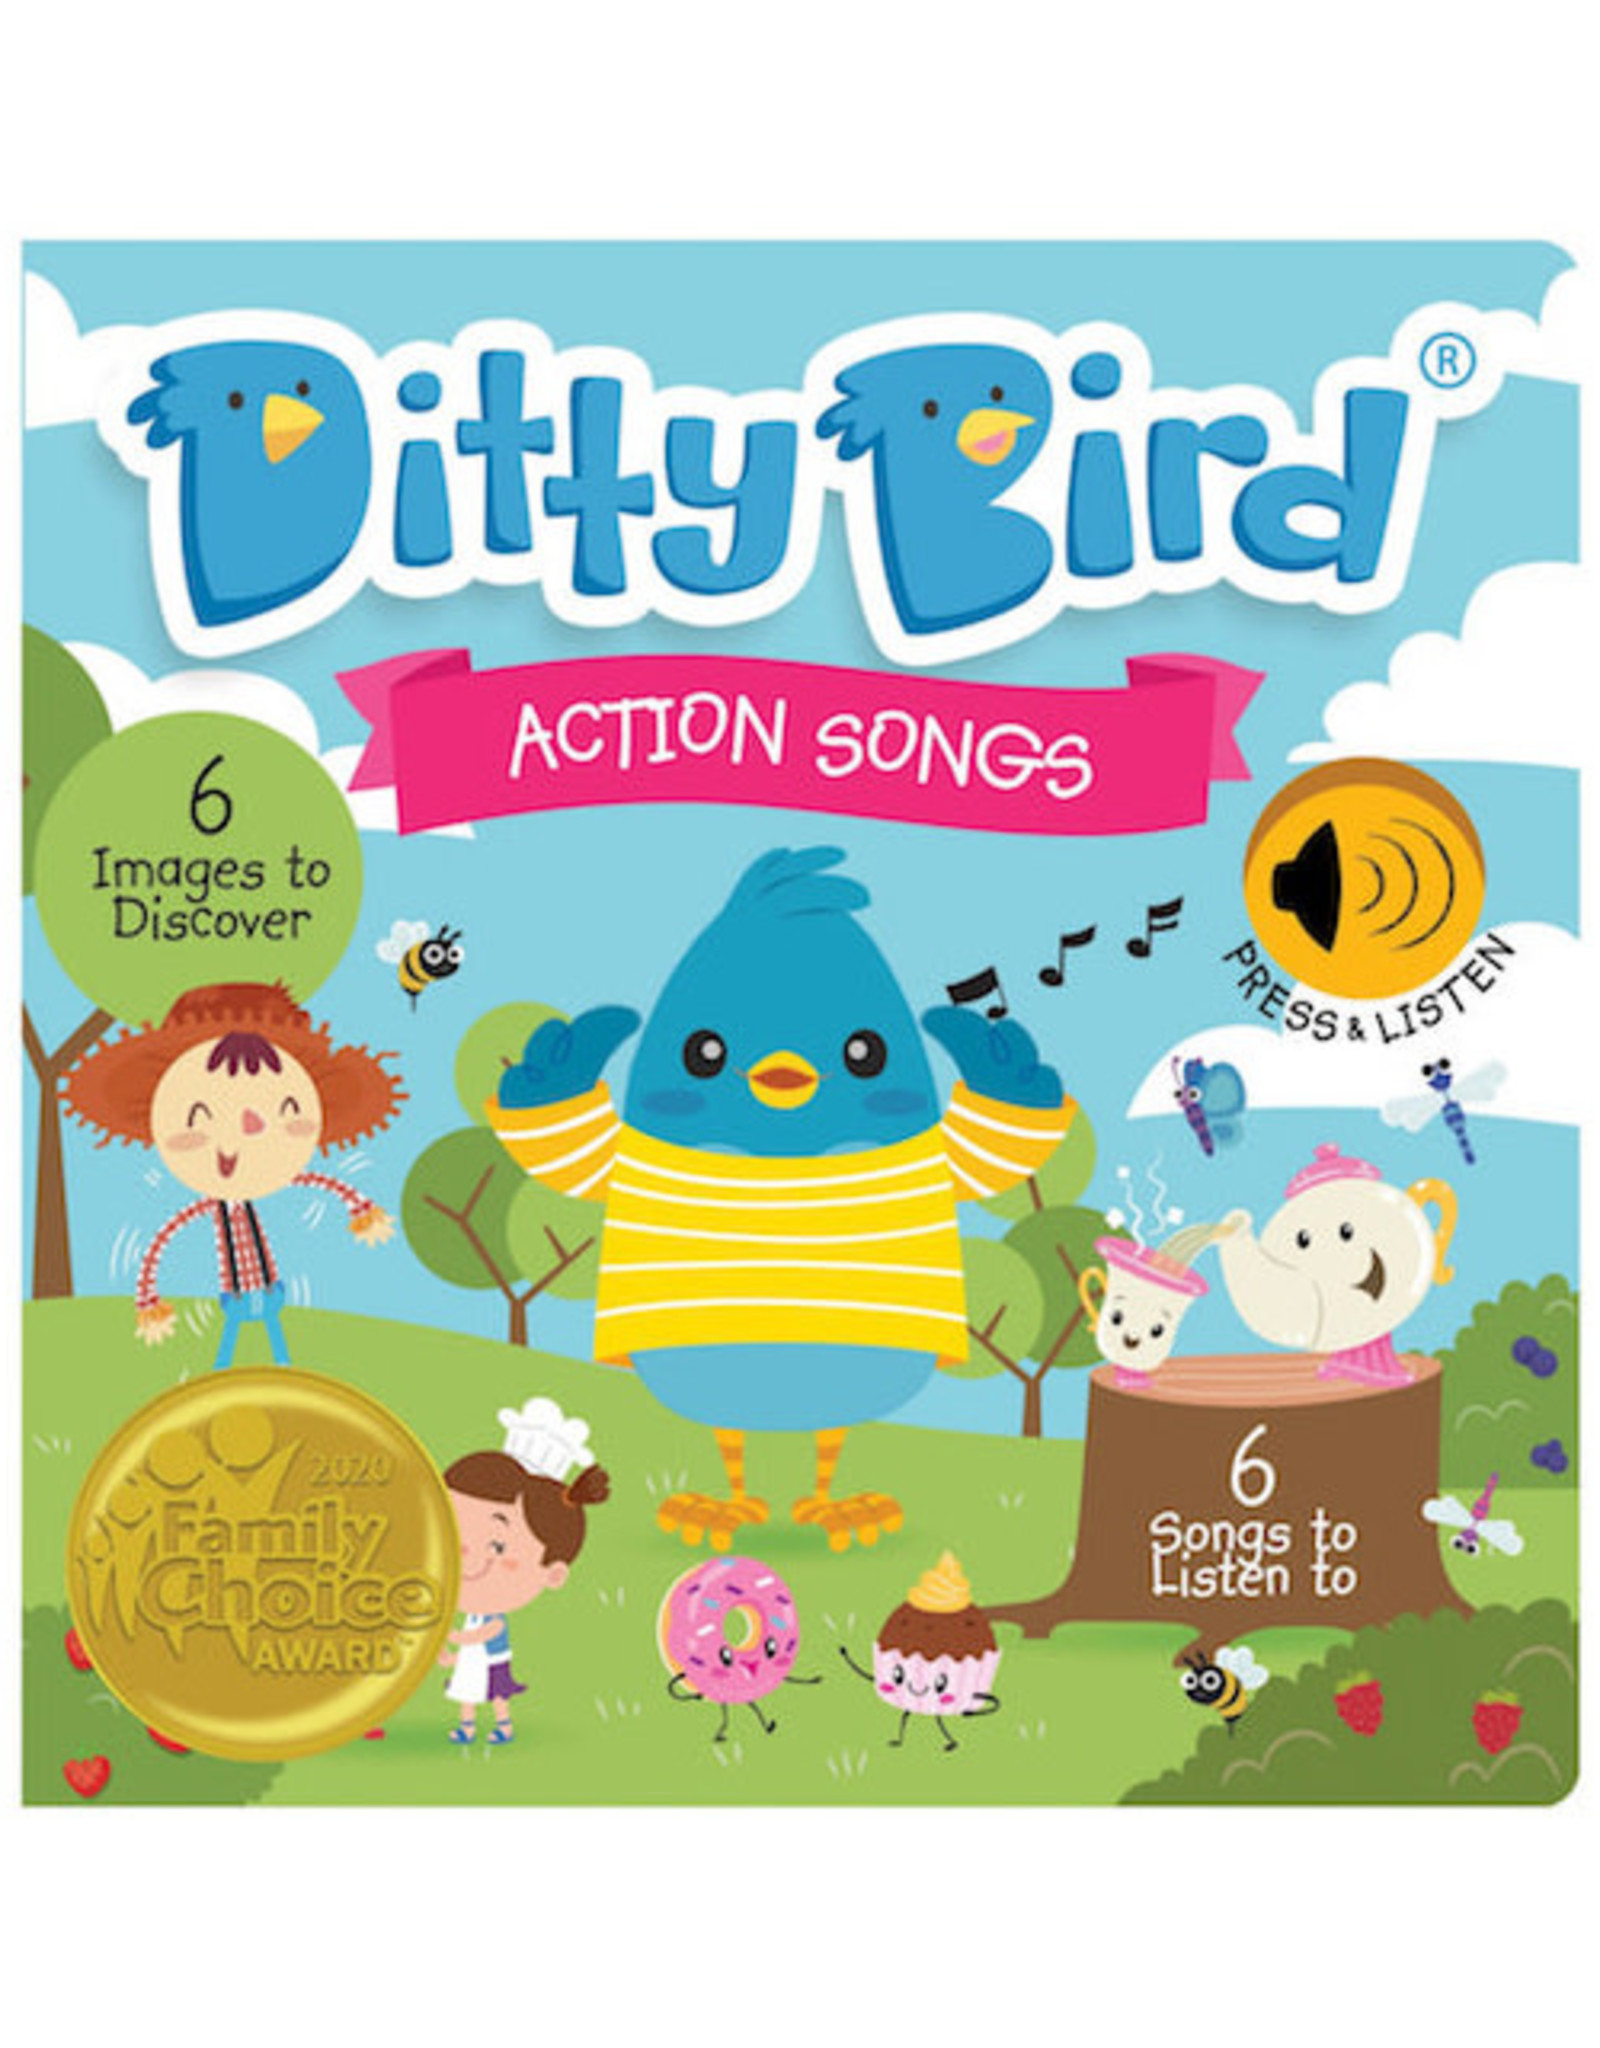 Ditty Bird Songs